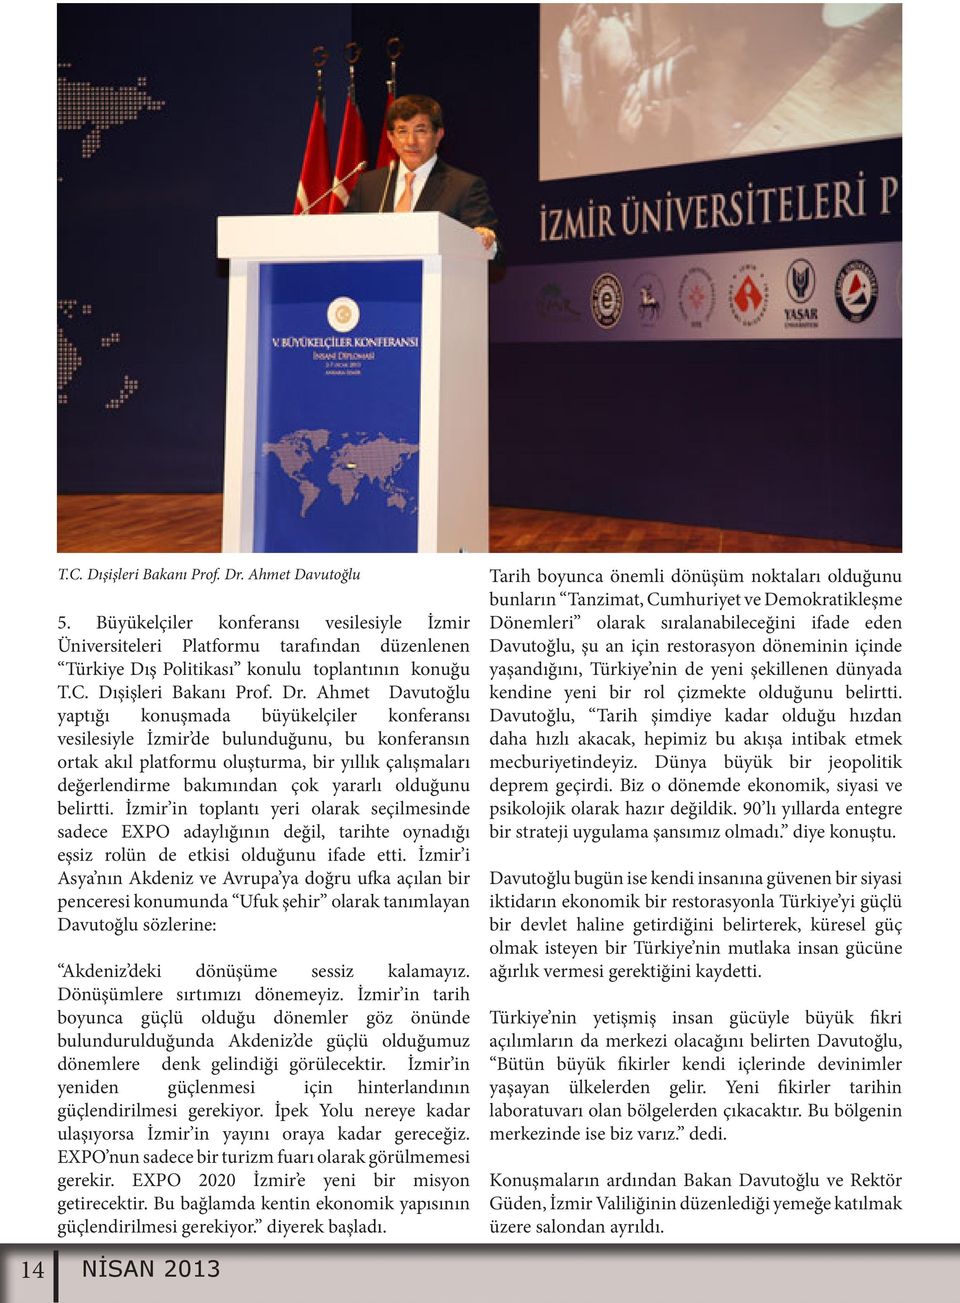 Ahmet Davutoğlu yaptığı konuşmada büyükelçiler konferansı vesilesiyle İzmir de bulunduğunu, bu konferansın ortak akıl platformu oluşturma, bir yıllık çalışmaları değerlendirme bakımından çok yararlı